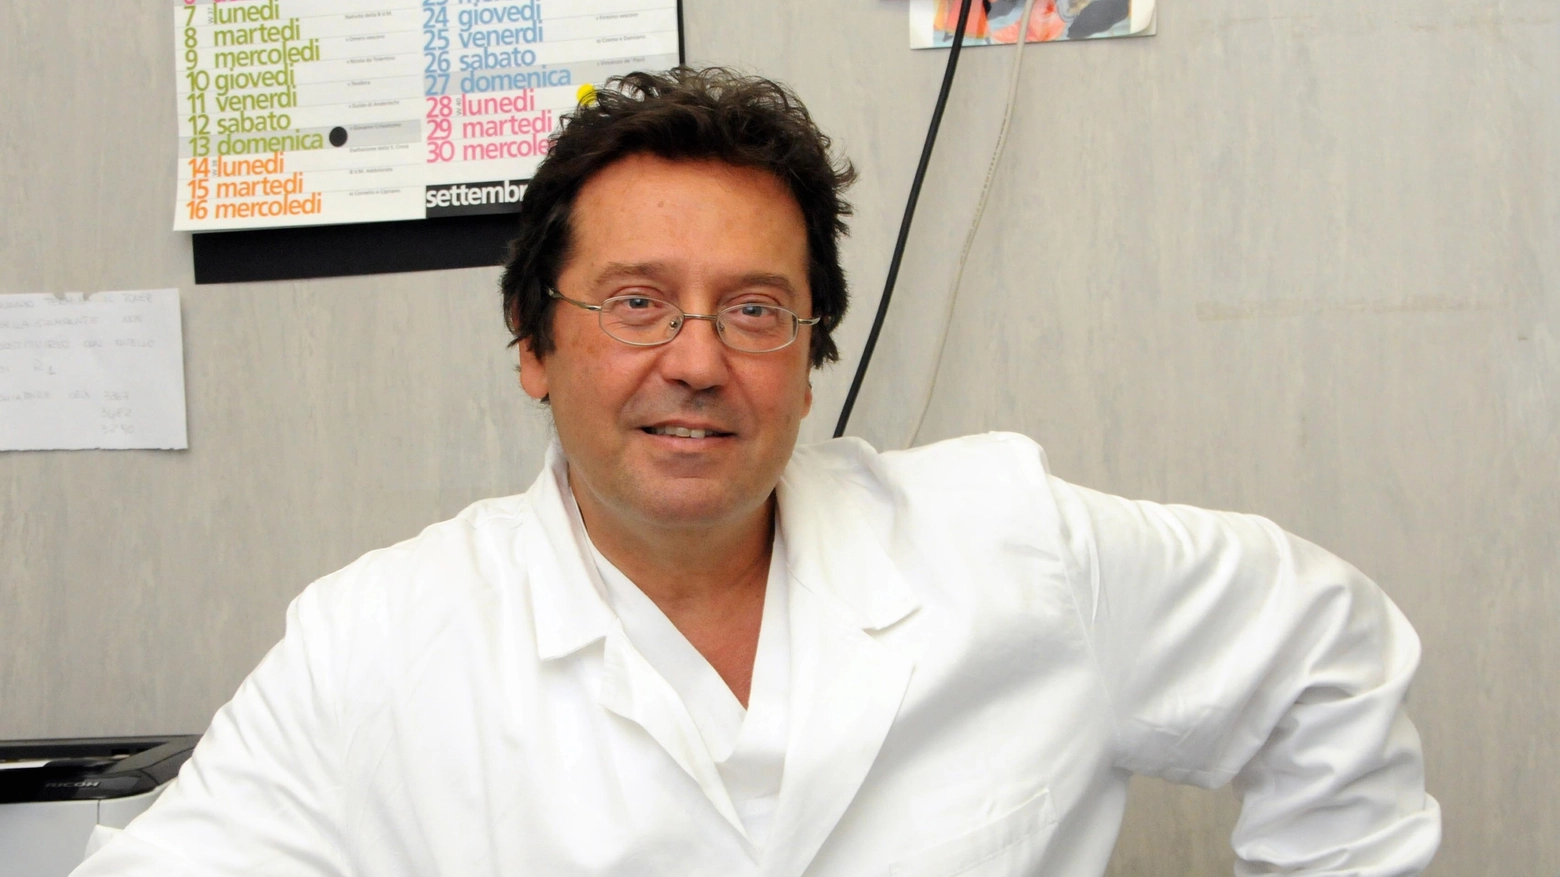 L'ortopedico Claudio Manzini